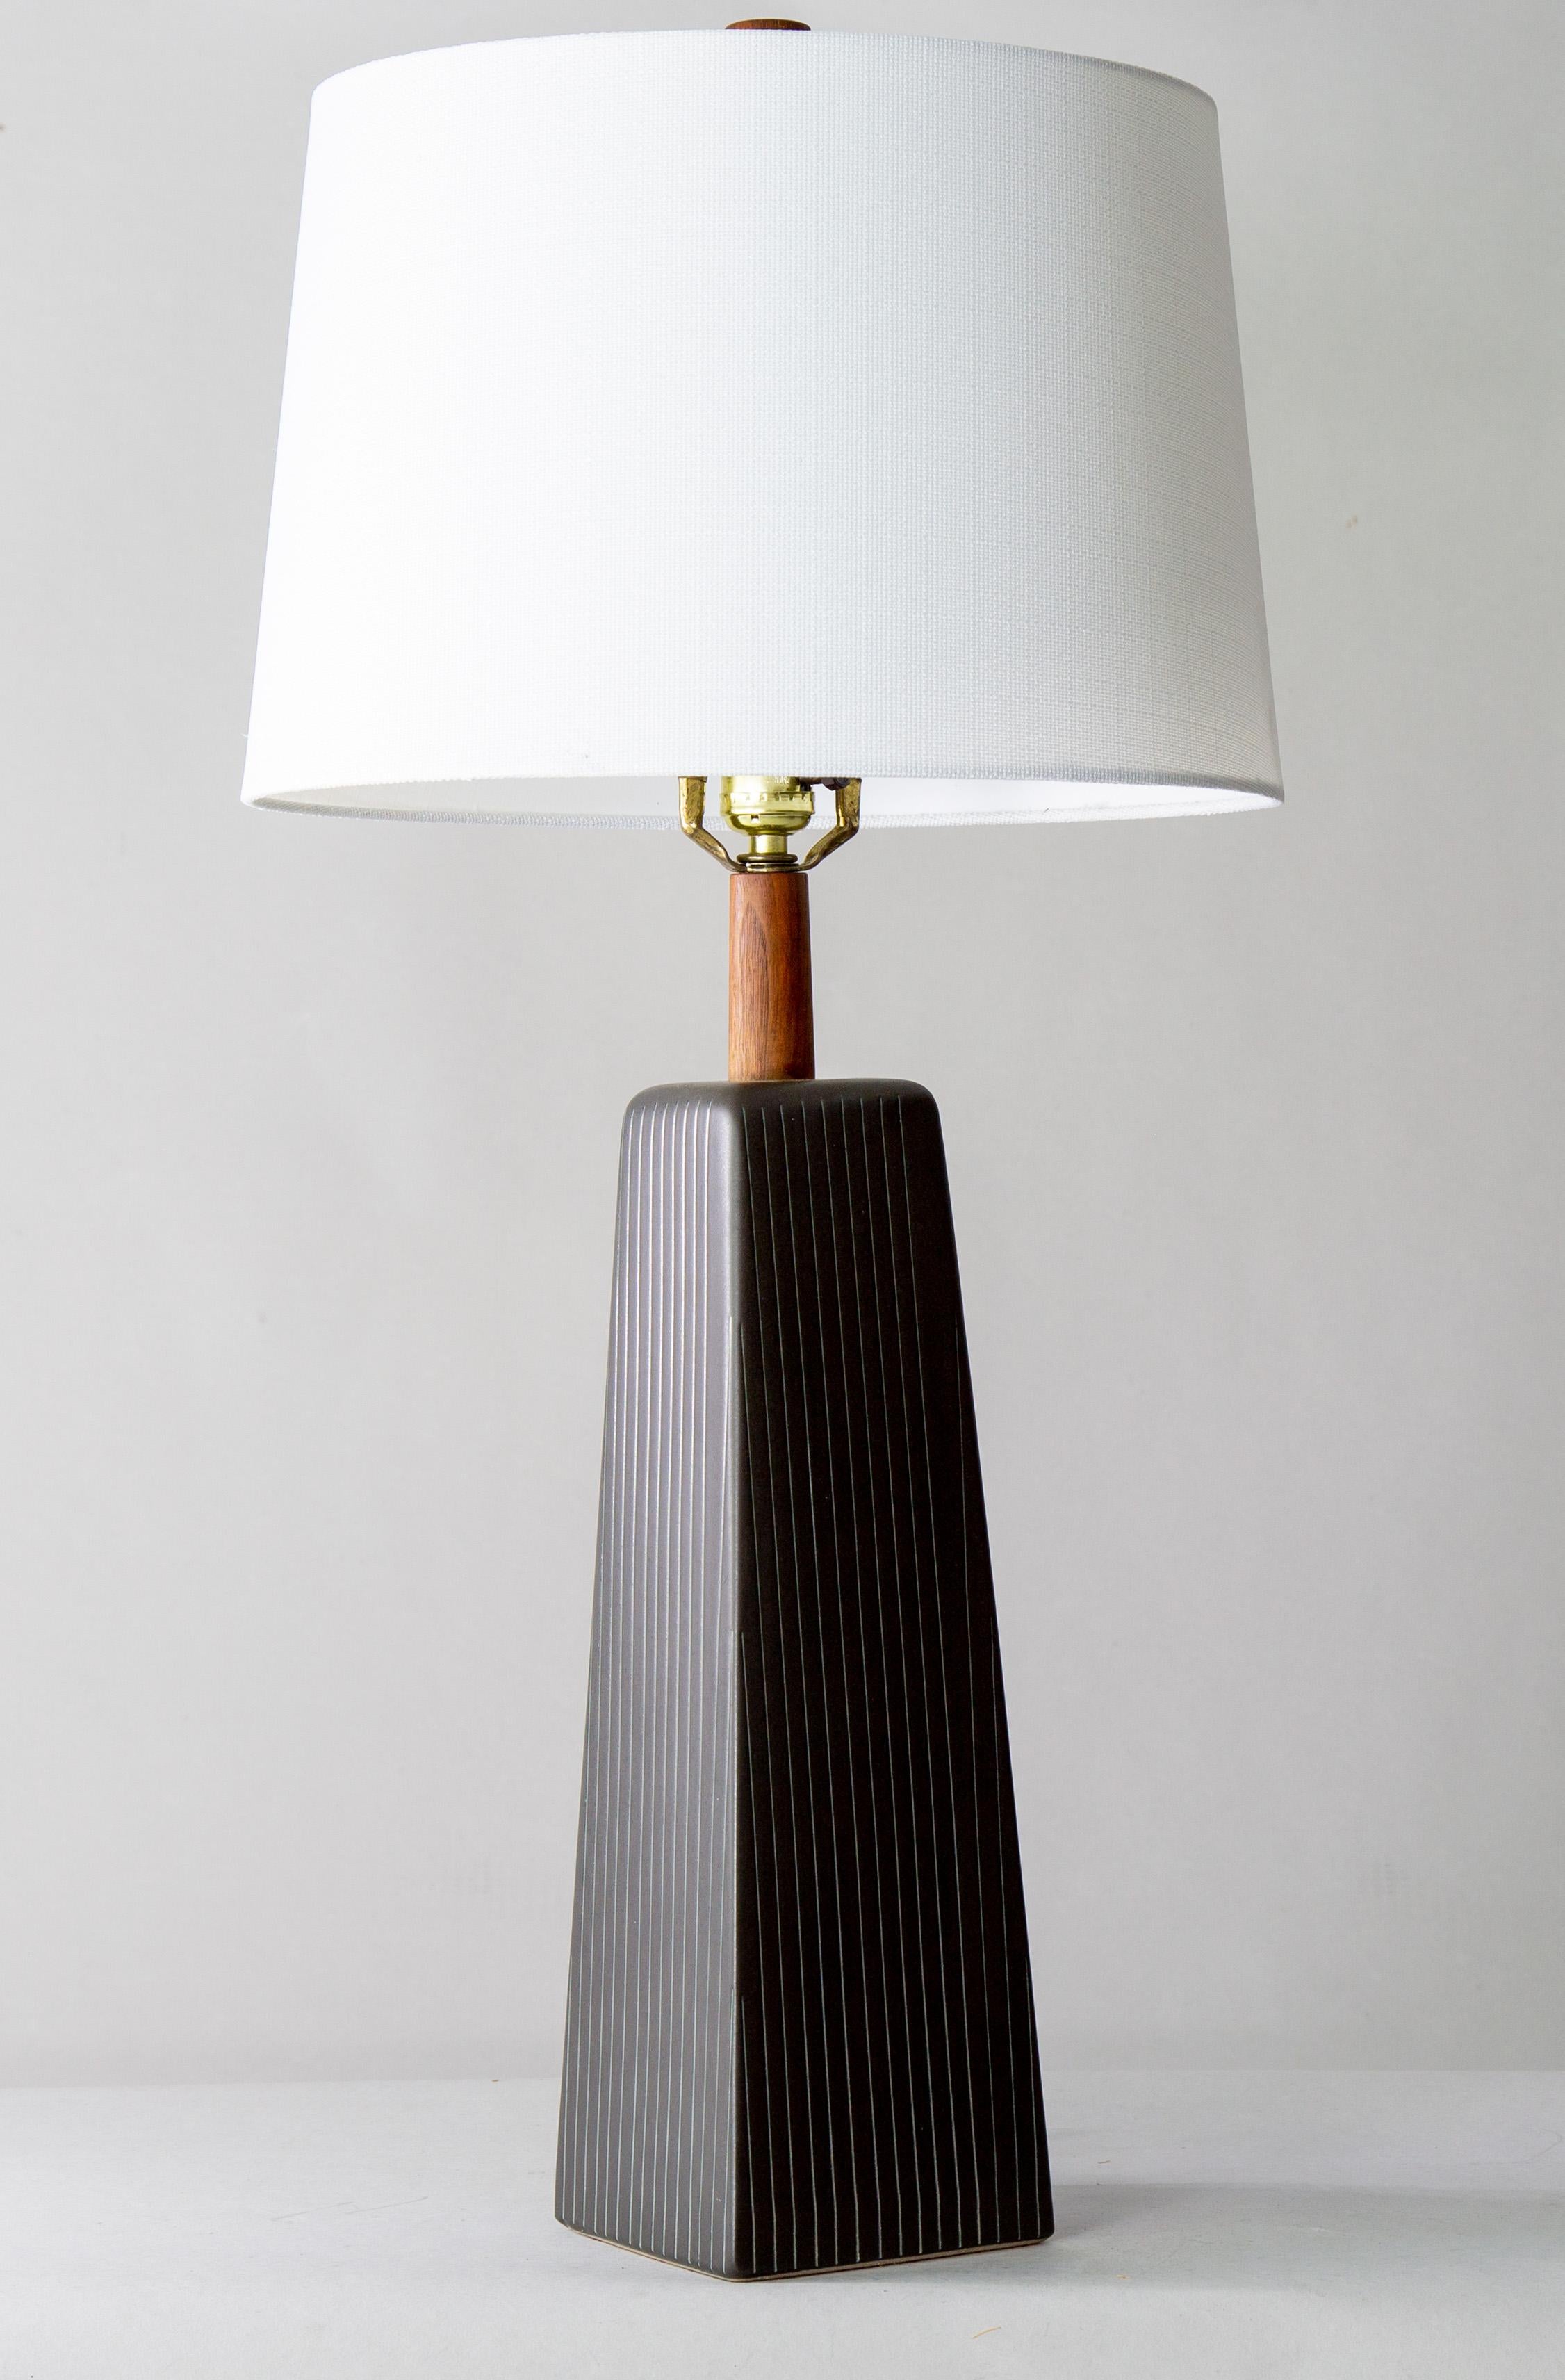 Lampe de collection des années 1960 conçue par Jane et Gordon Martz des Marshall Studios à Veedersburg (Indiana). Ces lampes sont très recherchées et apparaissent dans les designs du monde entier. Ce corps de lampe de table géométrique, de couleur